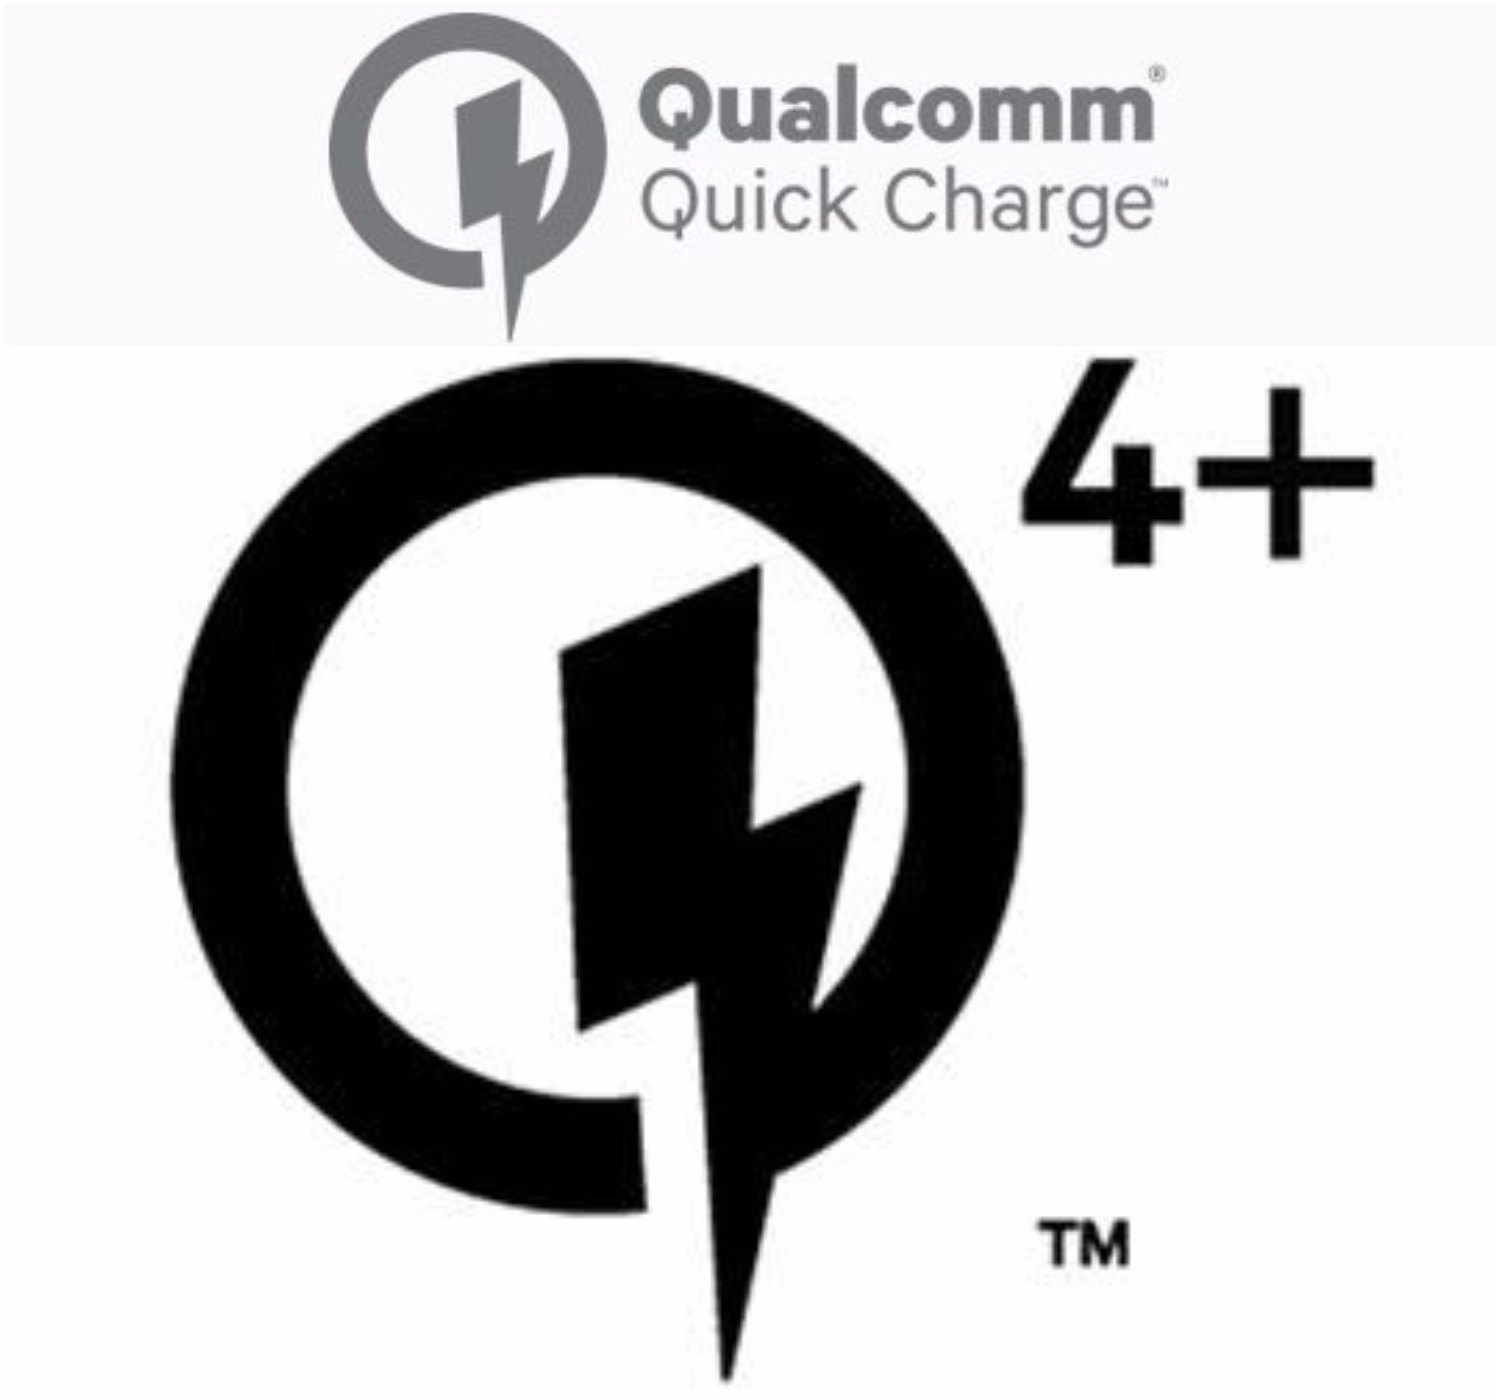 Qualcomm Quick Charge 4+ lansert: Hva er nytt i det?